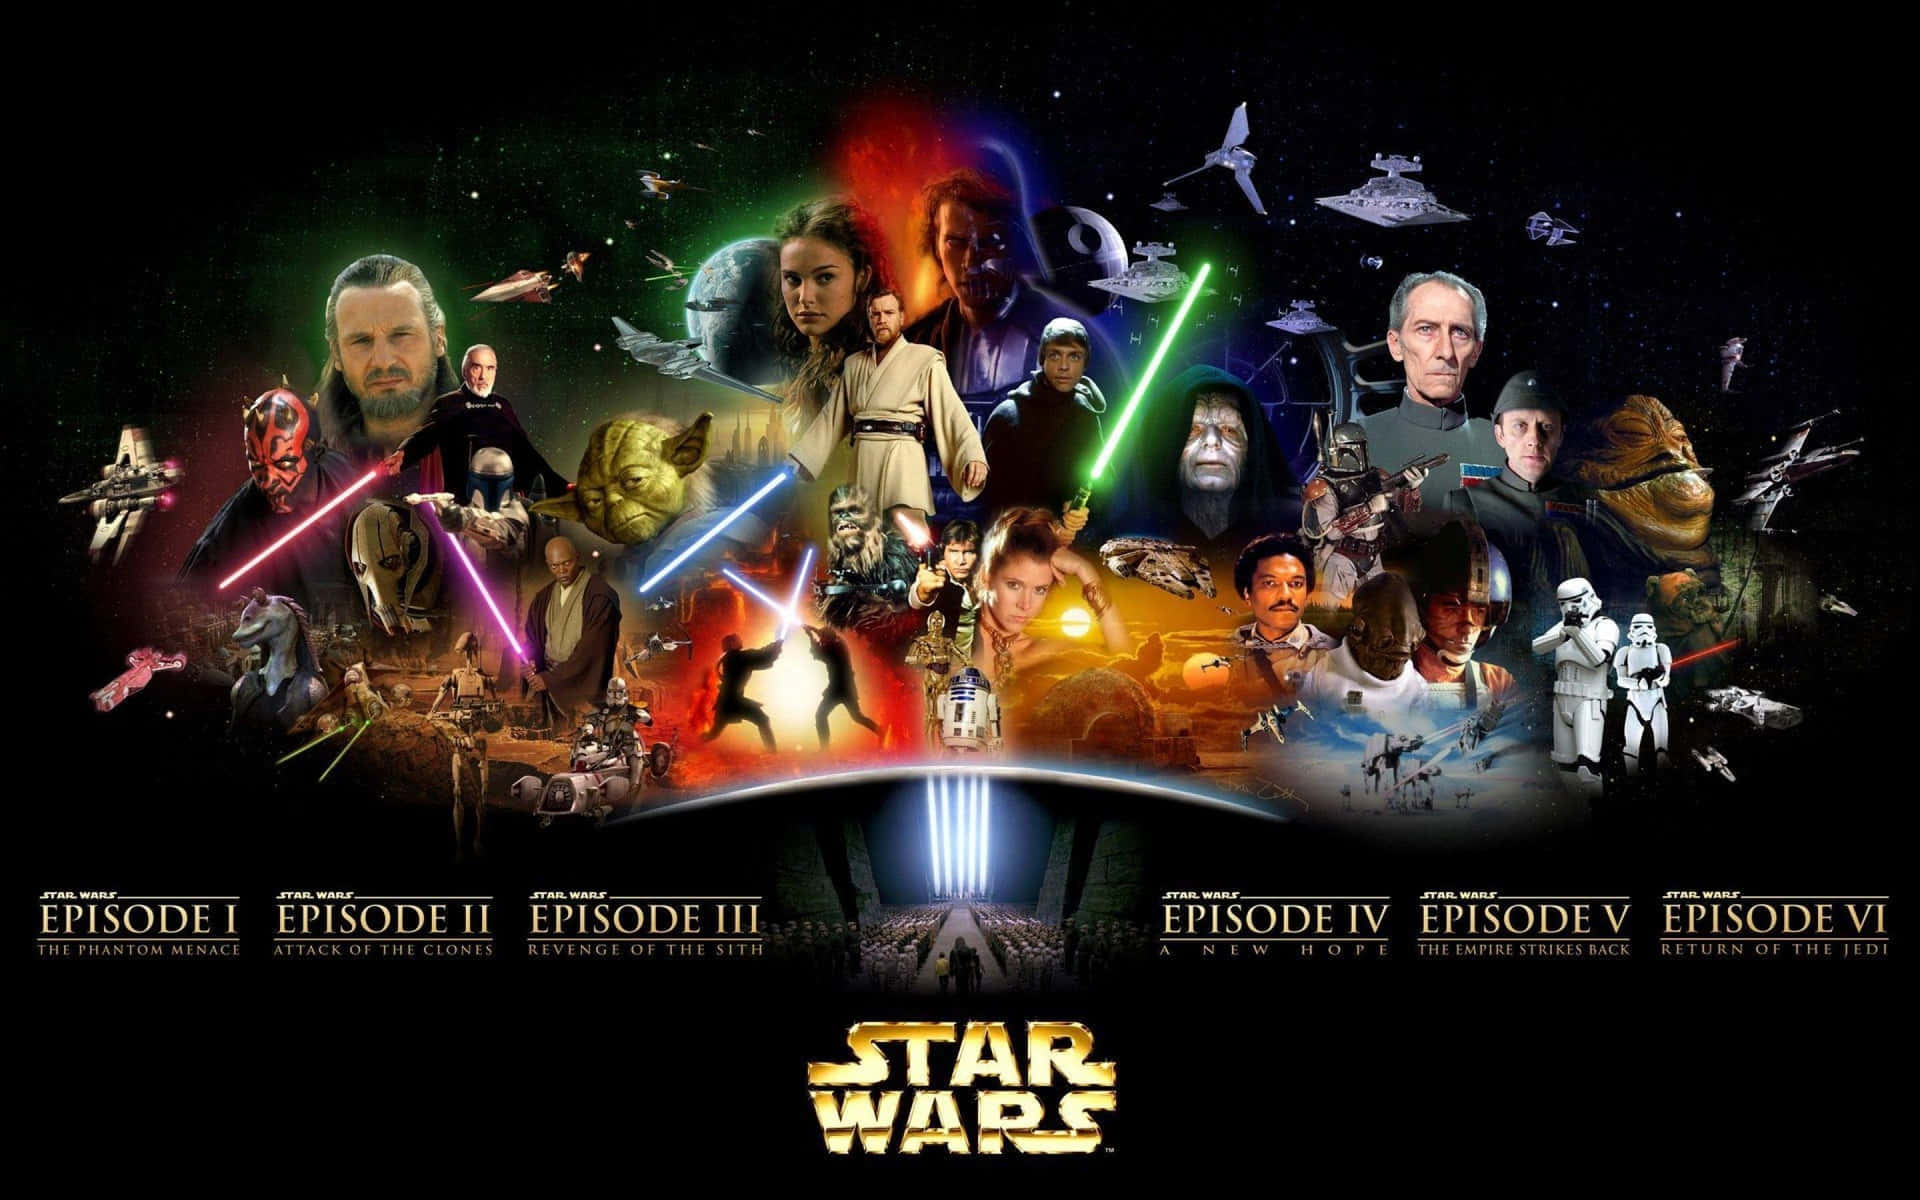 Star Wars Saga Collage Wallpaper